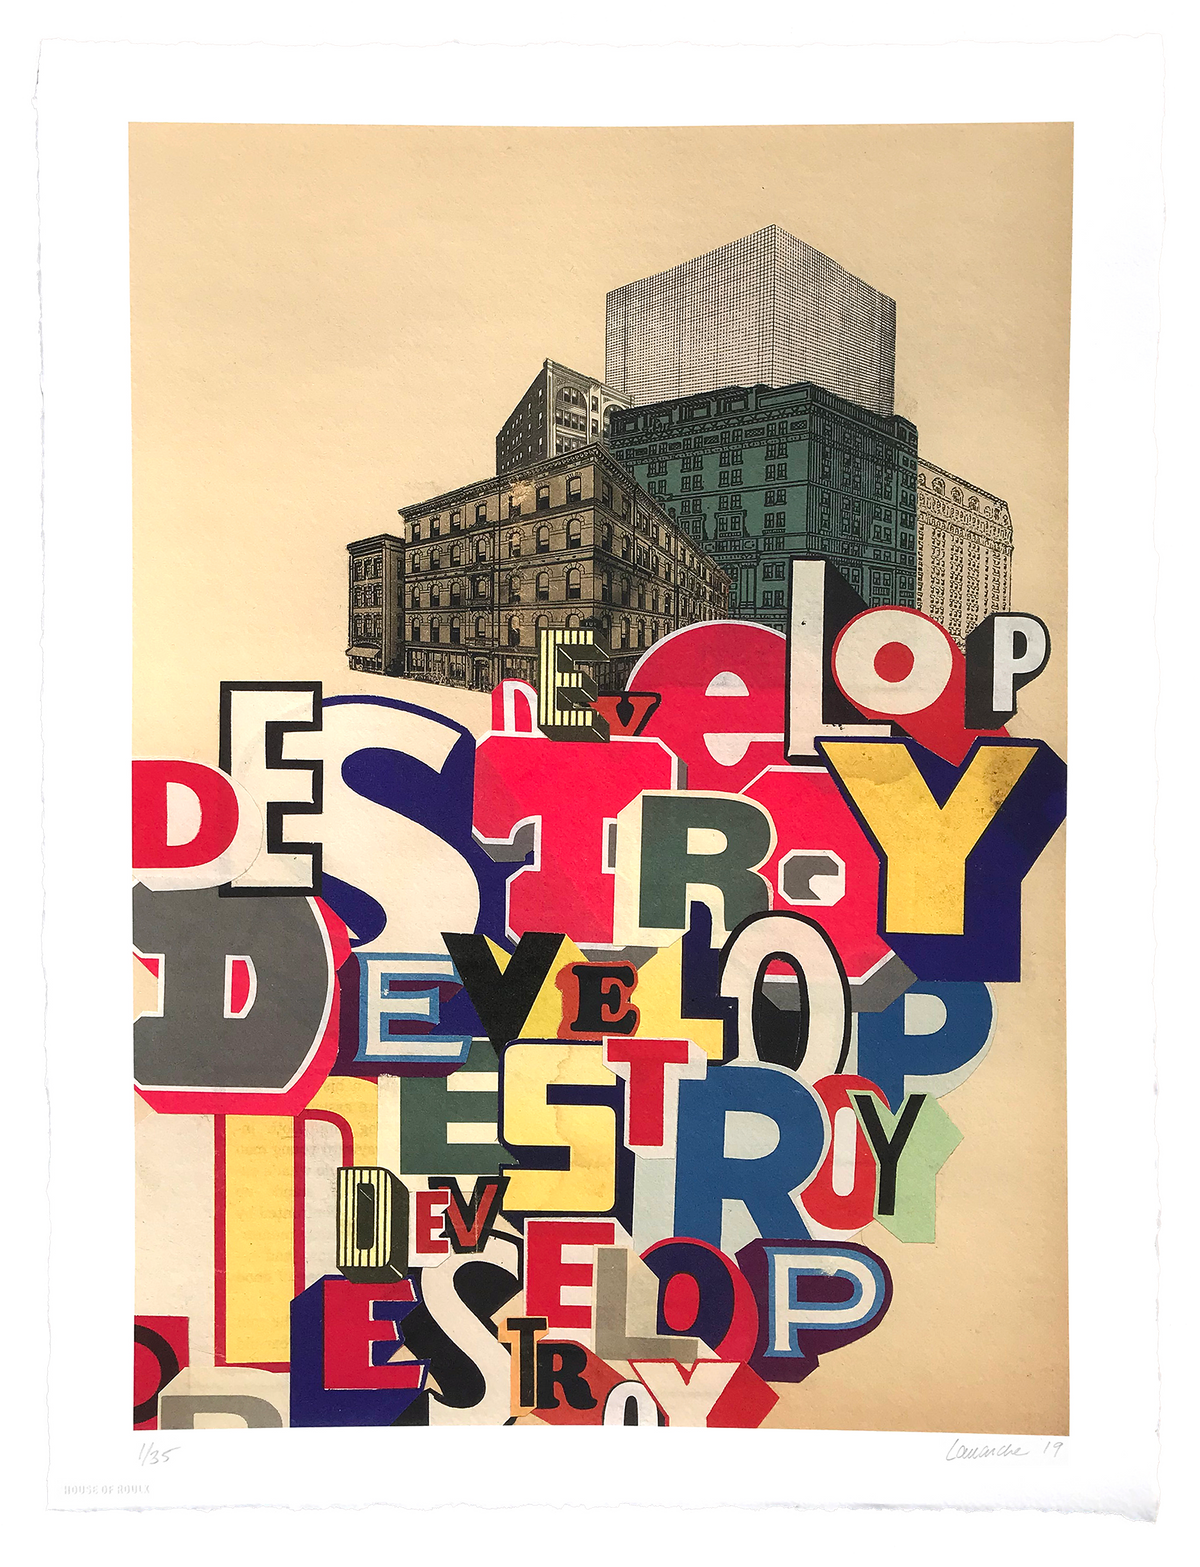 Greg Lamarche &quot;Develop Destroy&quot; - Archival Print, Limited Edition of 35 - 15 x 20&quot;